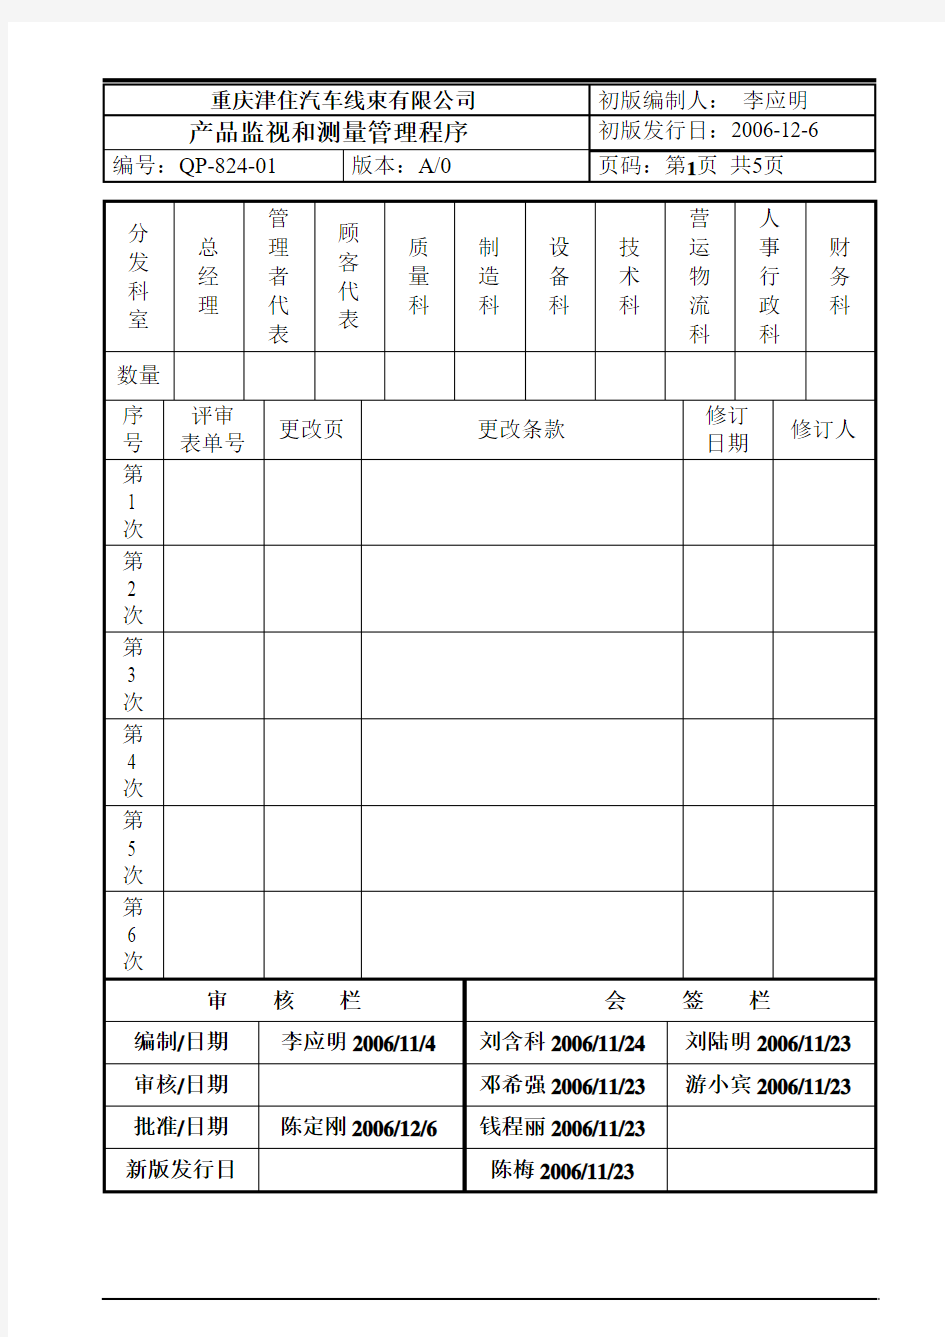 QP-824-01产品的监视和测量管理程序(2006.11.29)